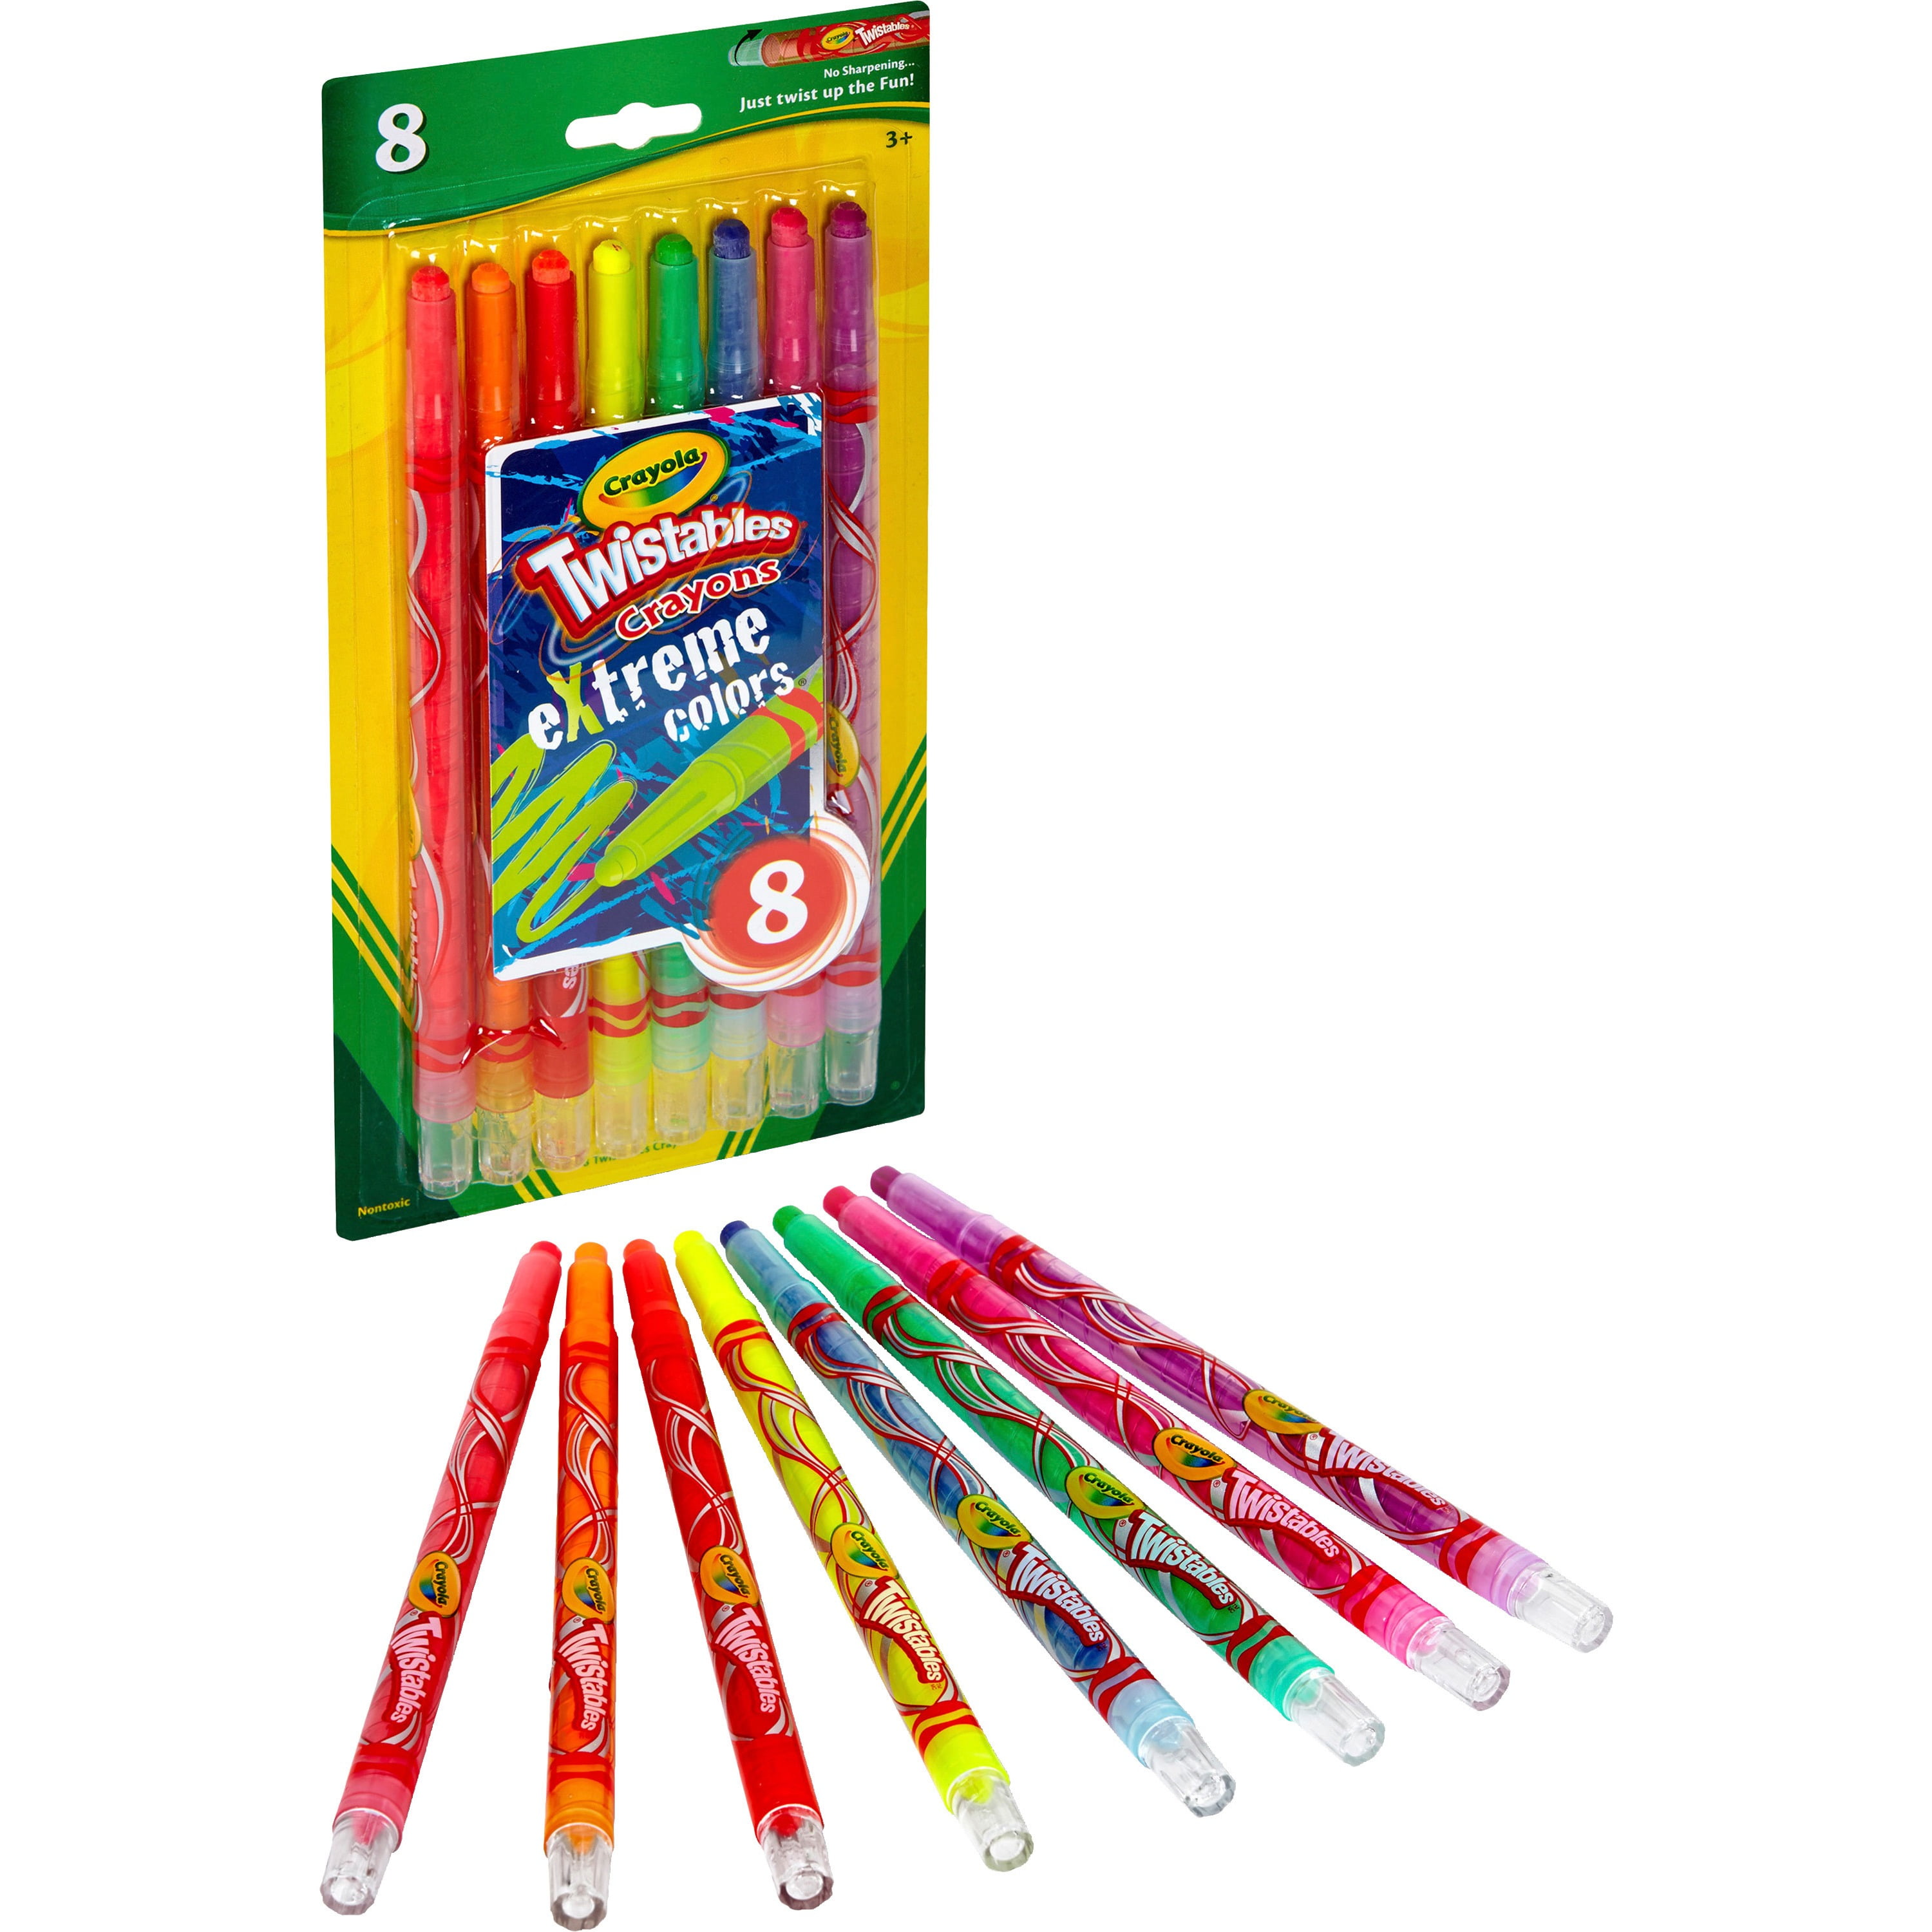 Dengmore Crayons Coloring Kit Rotating Multi color Crayon Does Not Dirty  Hand Crayon 8 Color Press Rotating Crayon 